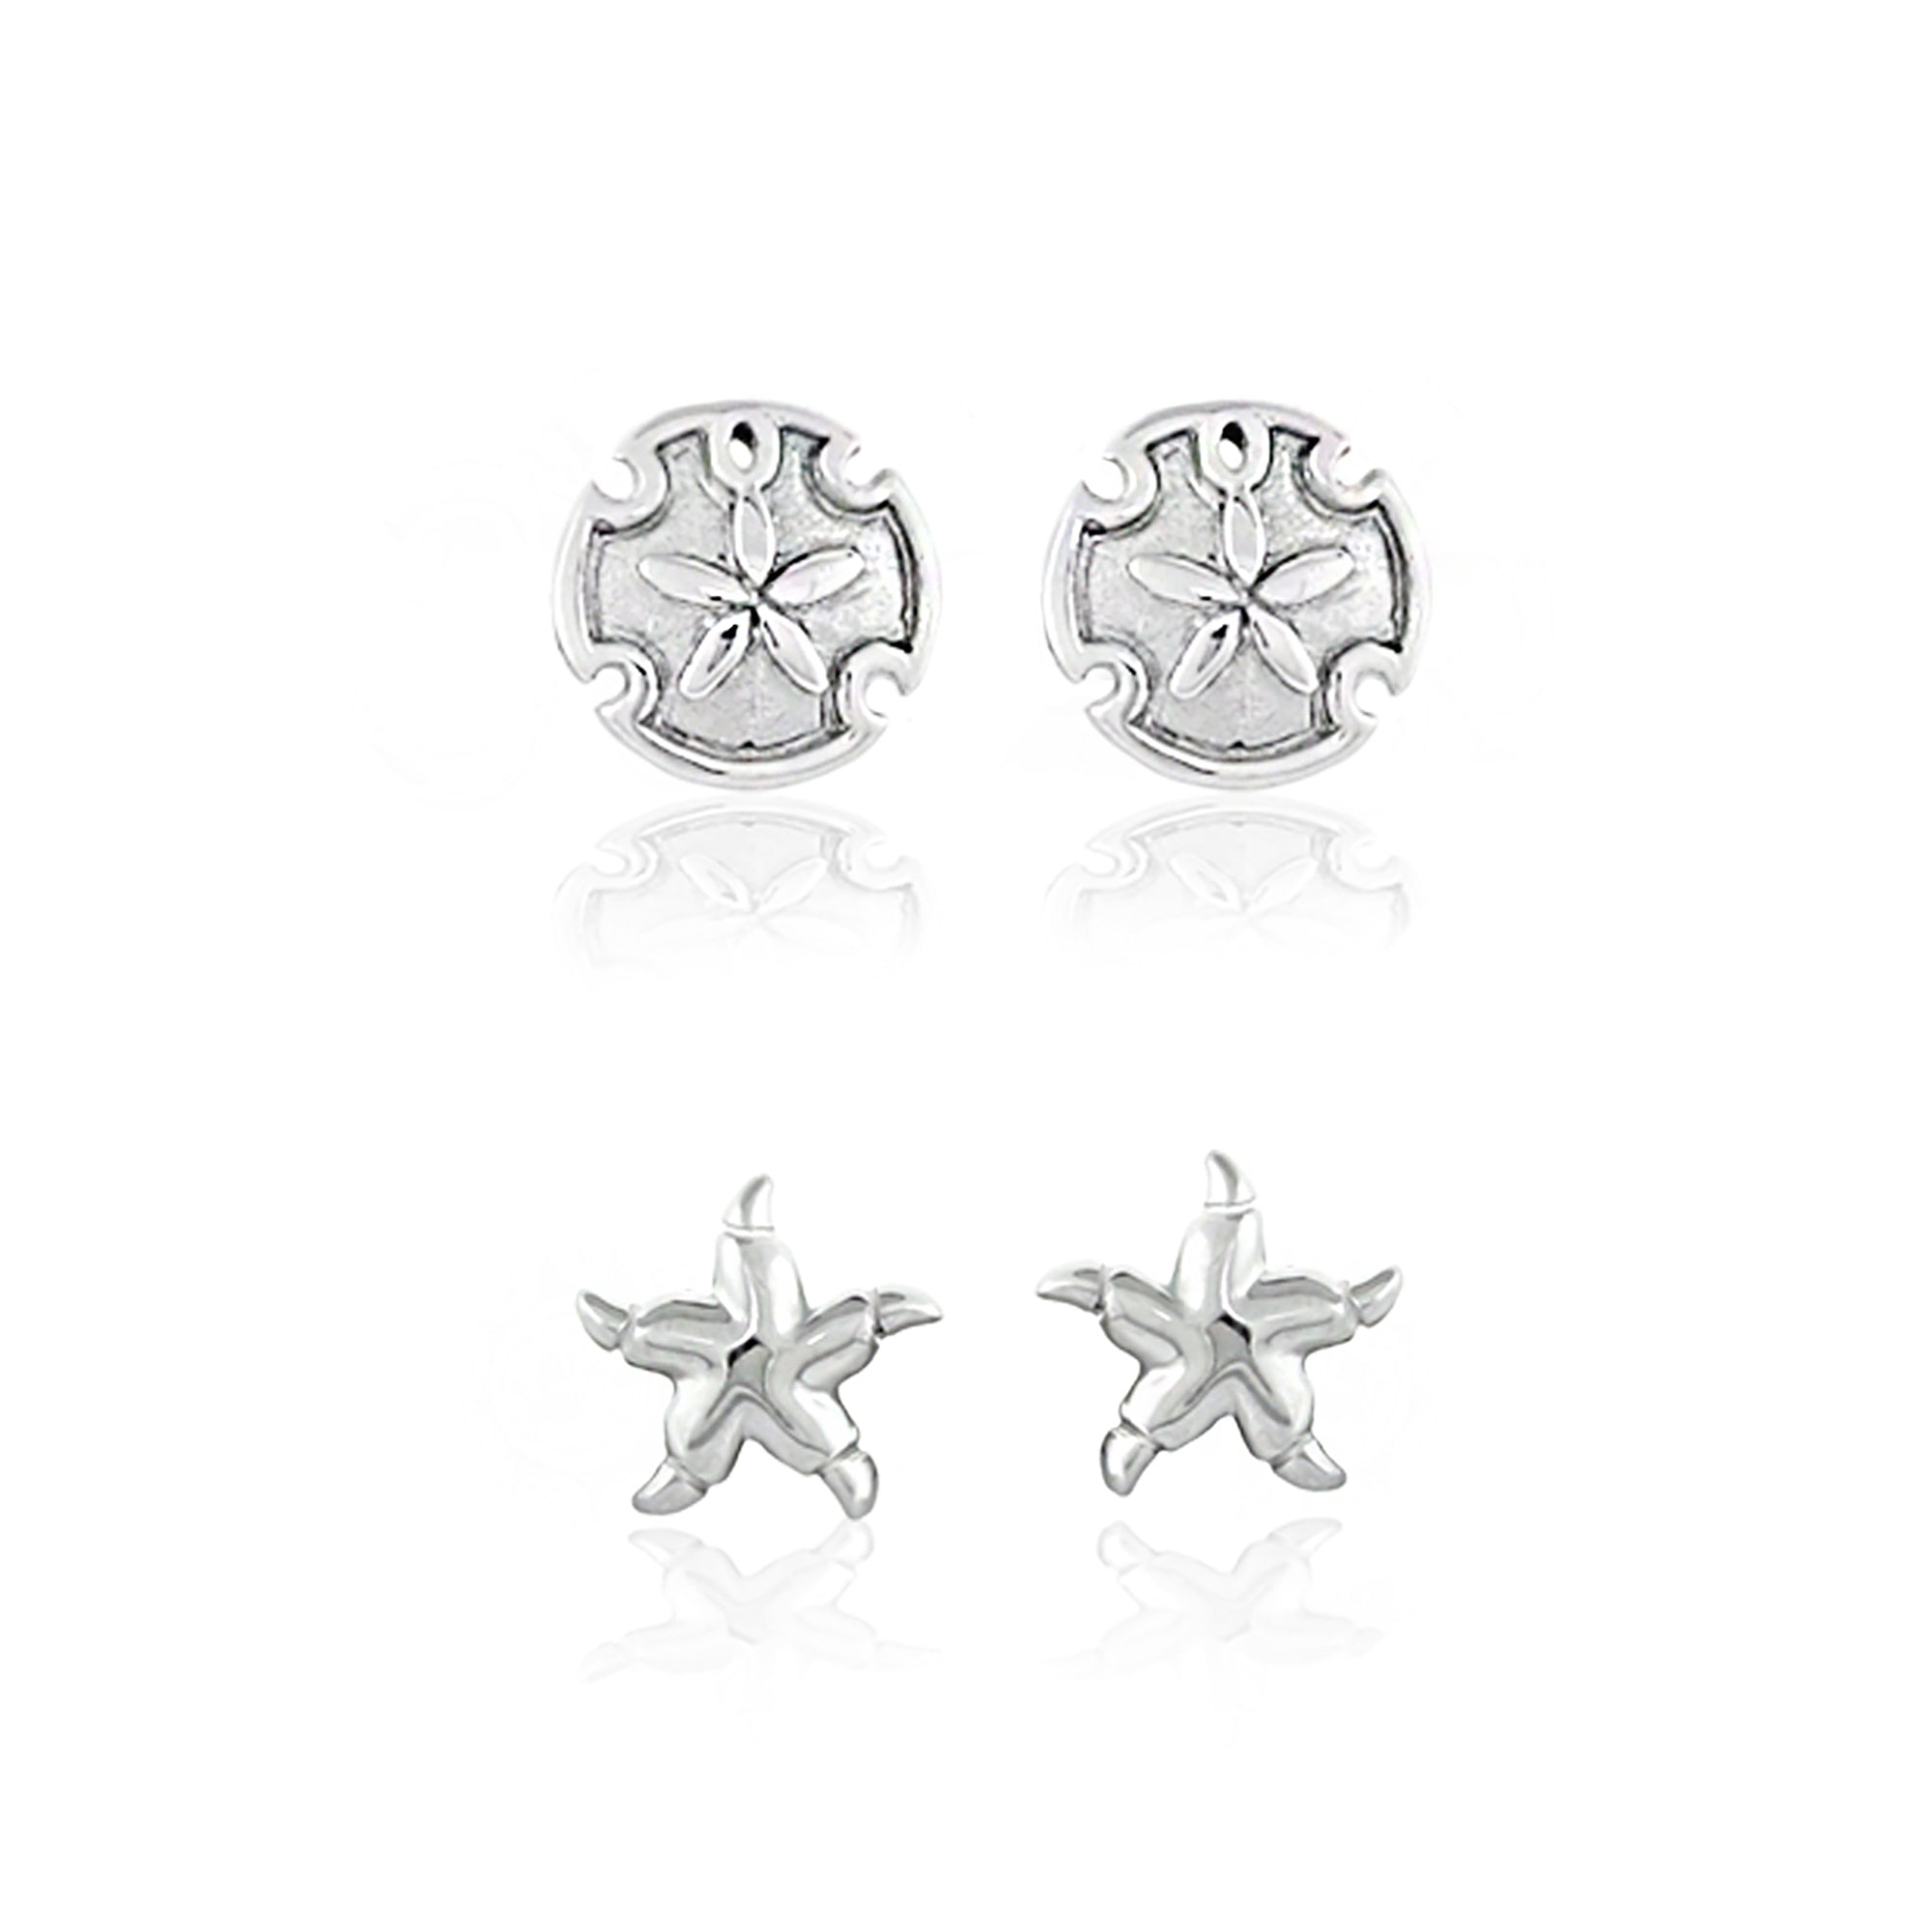 Sydney Leigh Sand Dollar & Starfish Earrings Set of 2